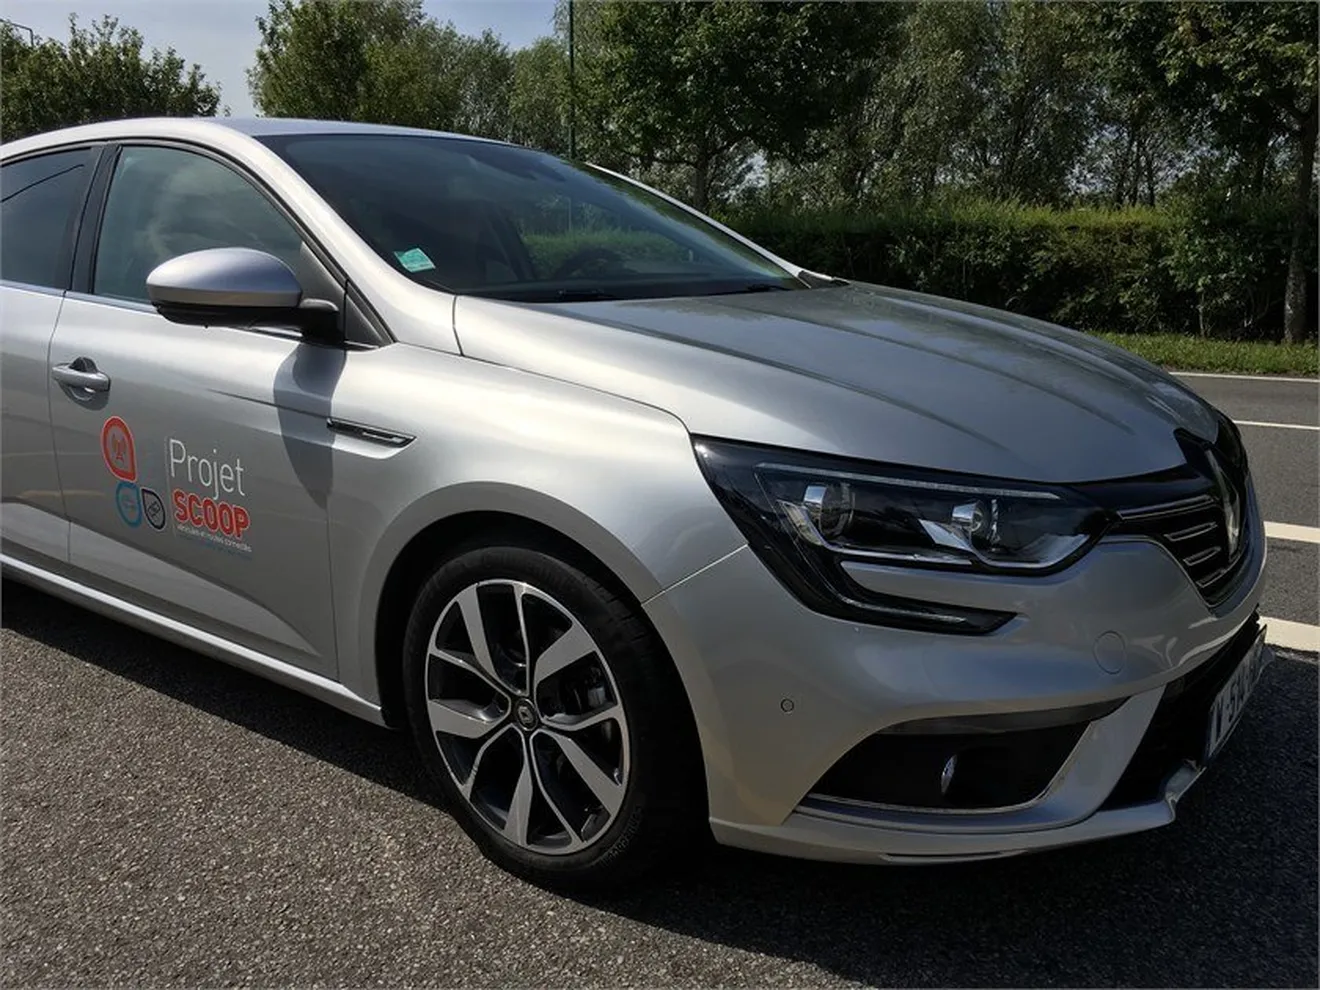 Renault comienza sus pruebas de comunicación entre vehículos en tráfico real